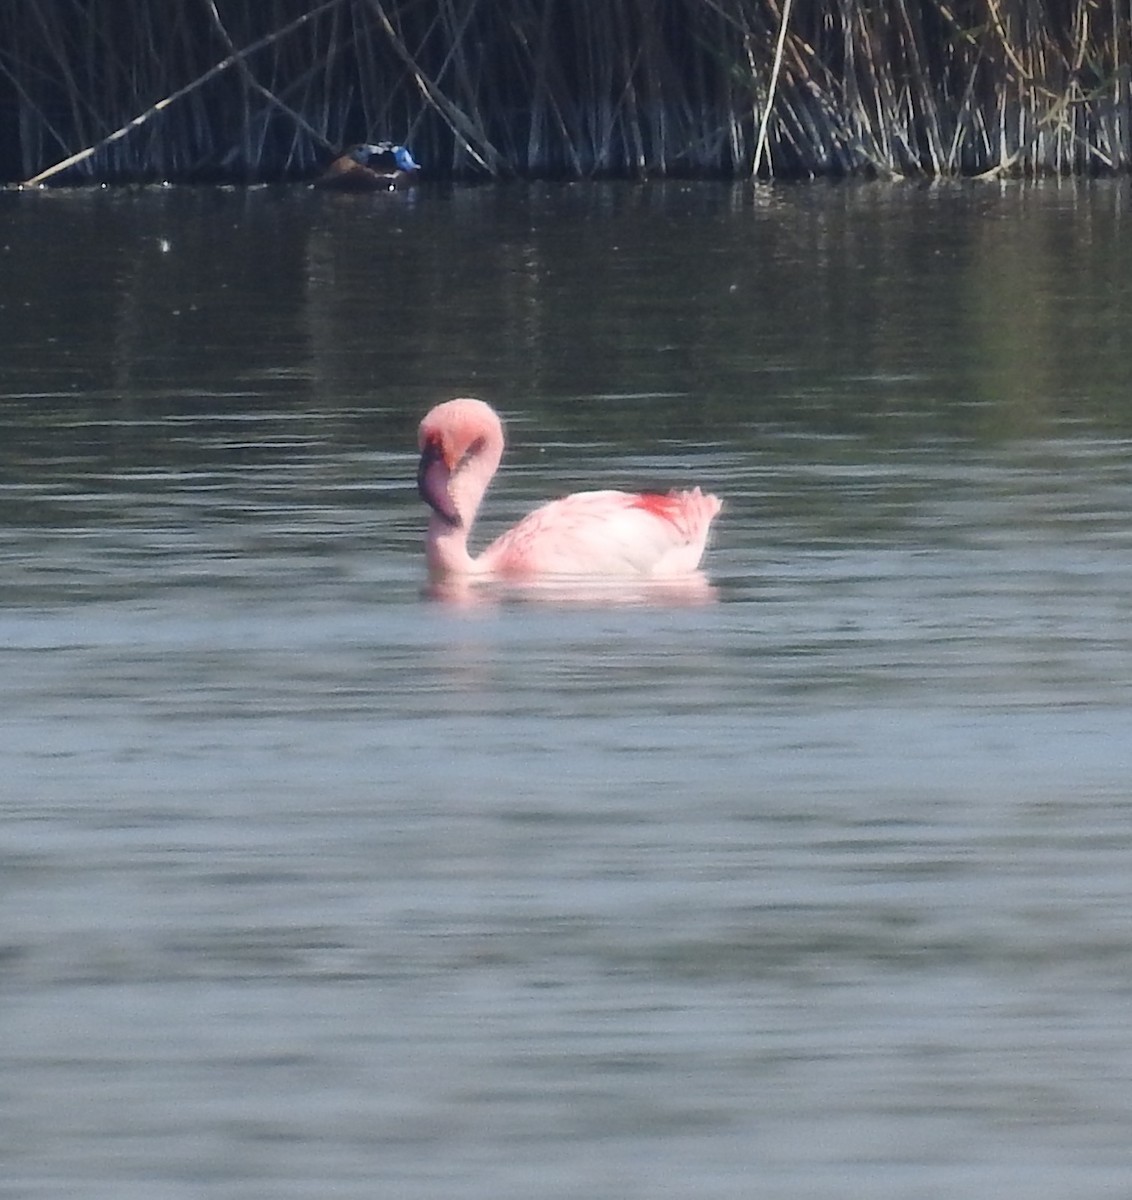 Lesser Flamingo - Mario Navarro Gomis